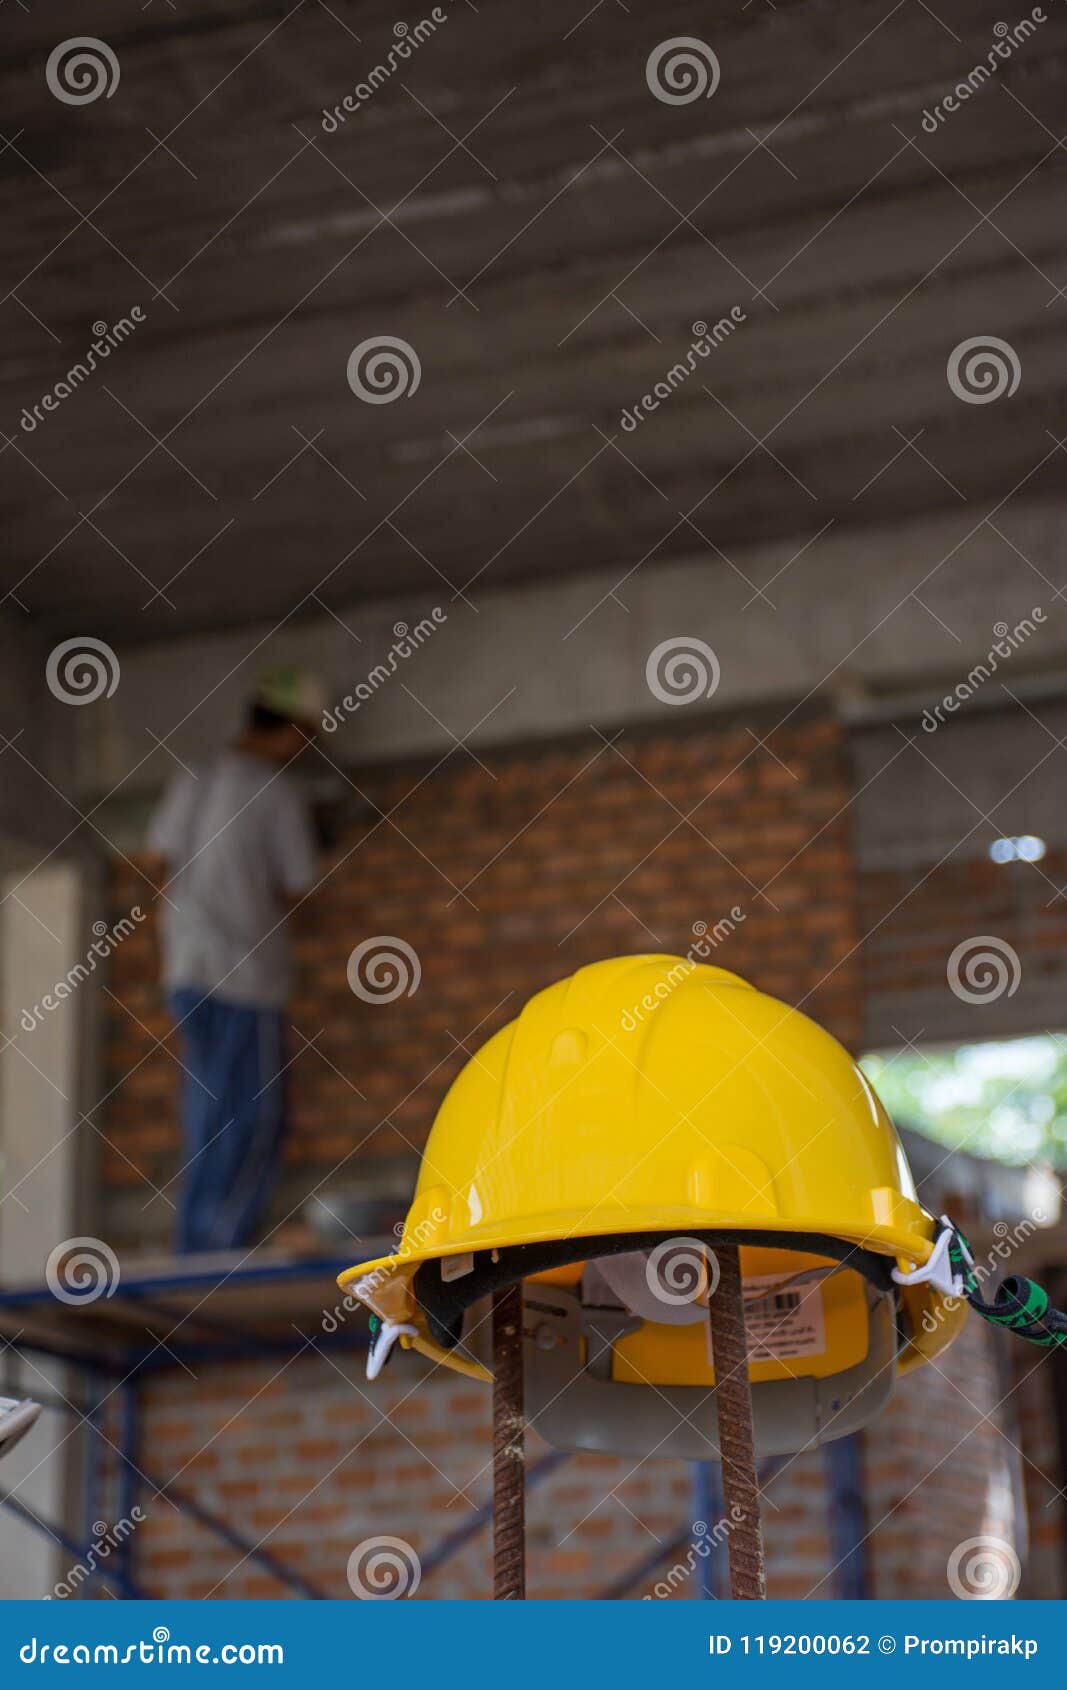 Capacete de segurança amarelo com o trabalhador da construção que coloca tijolos sobre. Capacete de segurança amarelo com o trabalhador da construção que coloca tijolos no cimento para construir paredes exteriores